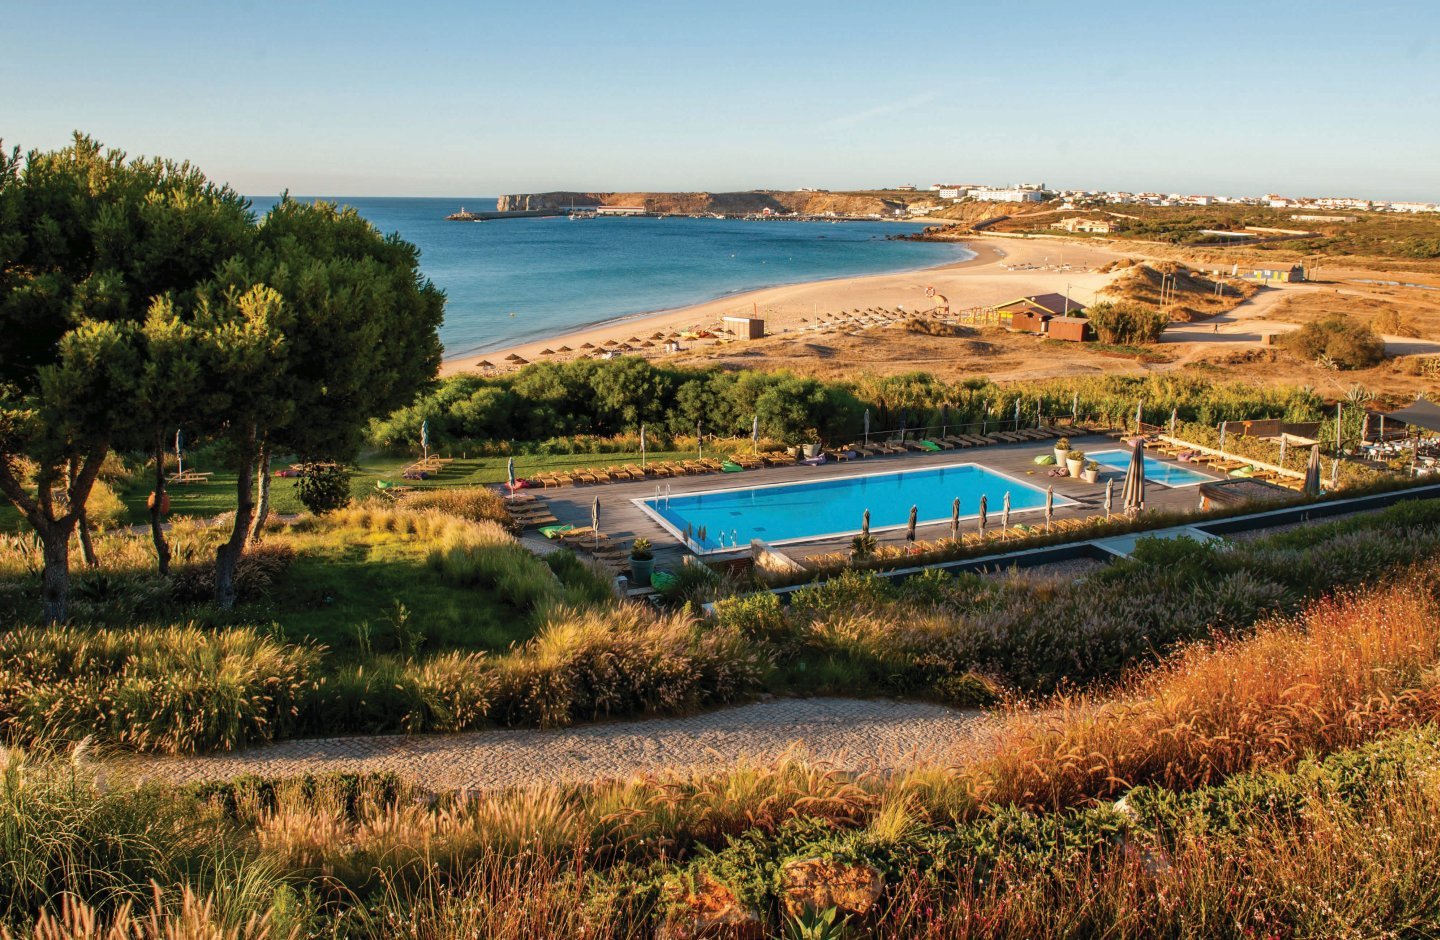 Martinhal Sagres Beach Resort - Un paradiso all inclusive per tutta la famiglia